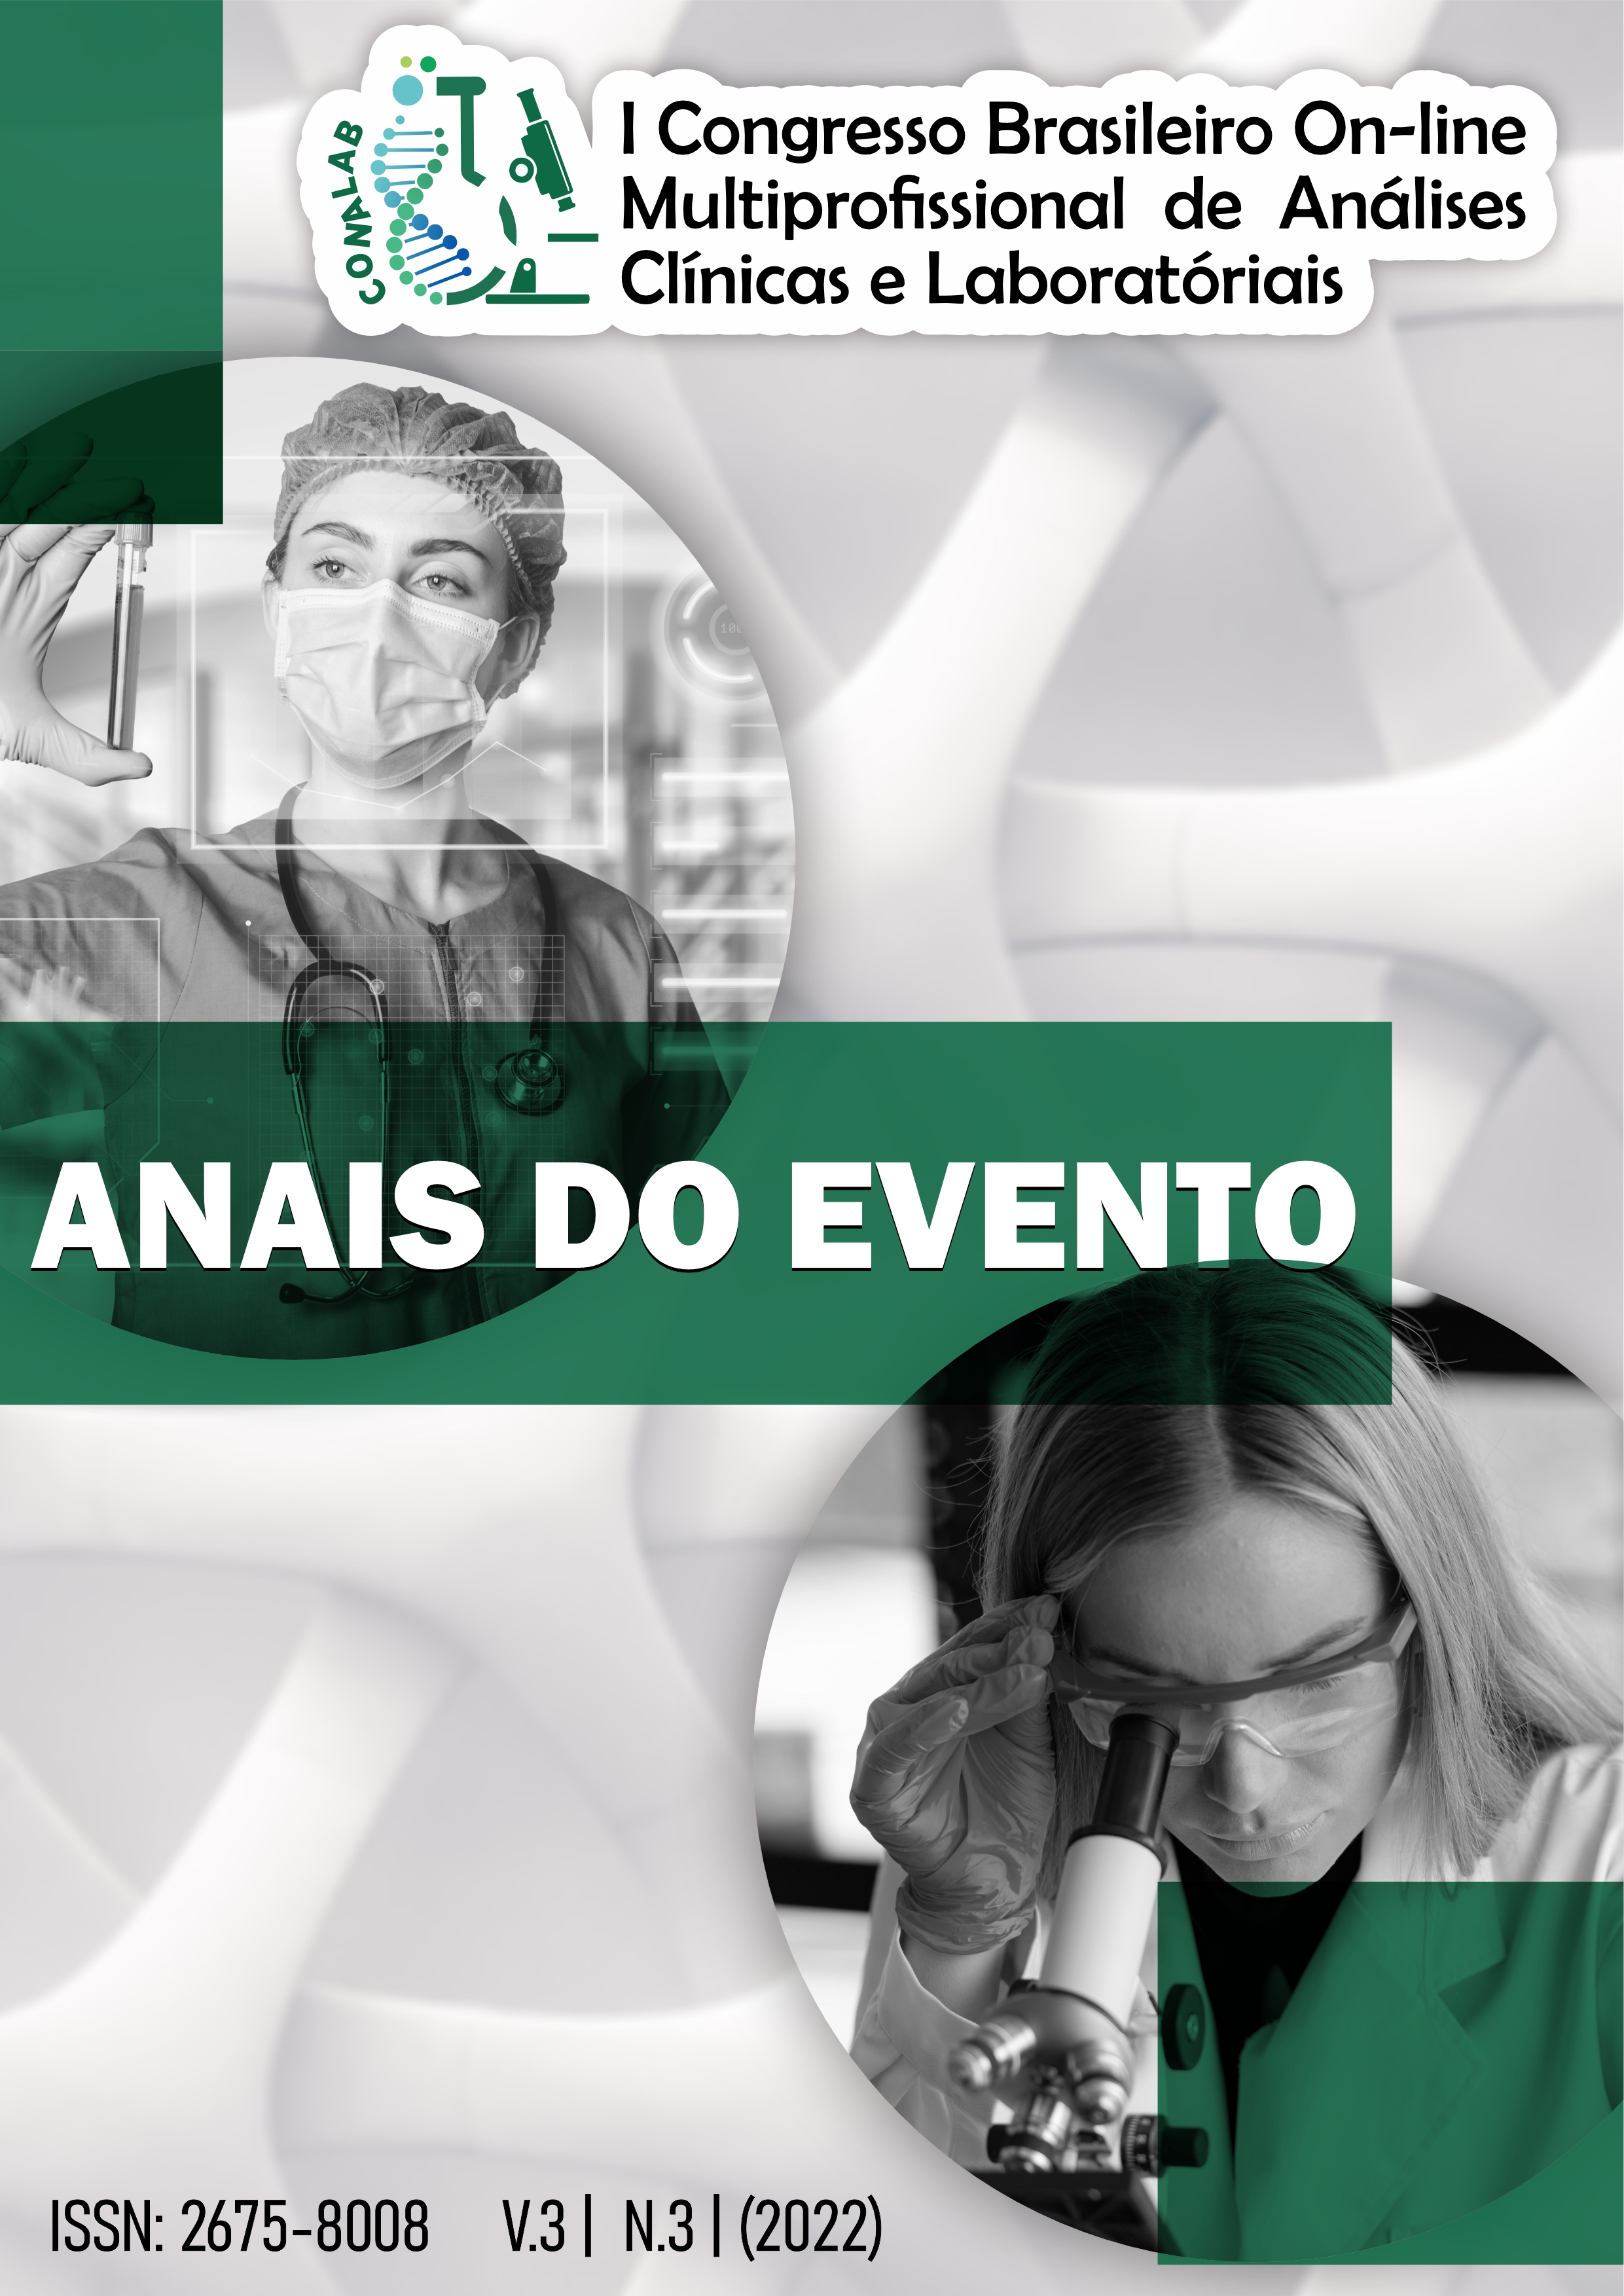 					Visualizar I Congresso Brasileiro On-line Multiprofissional de Análises Clínicas e Laboratoriais
				